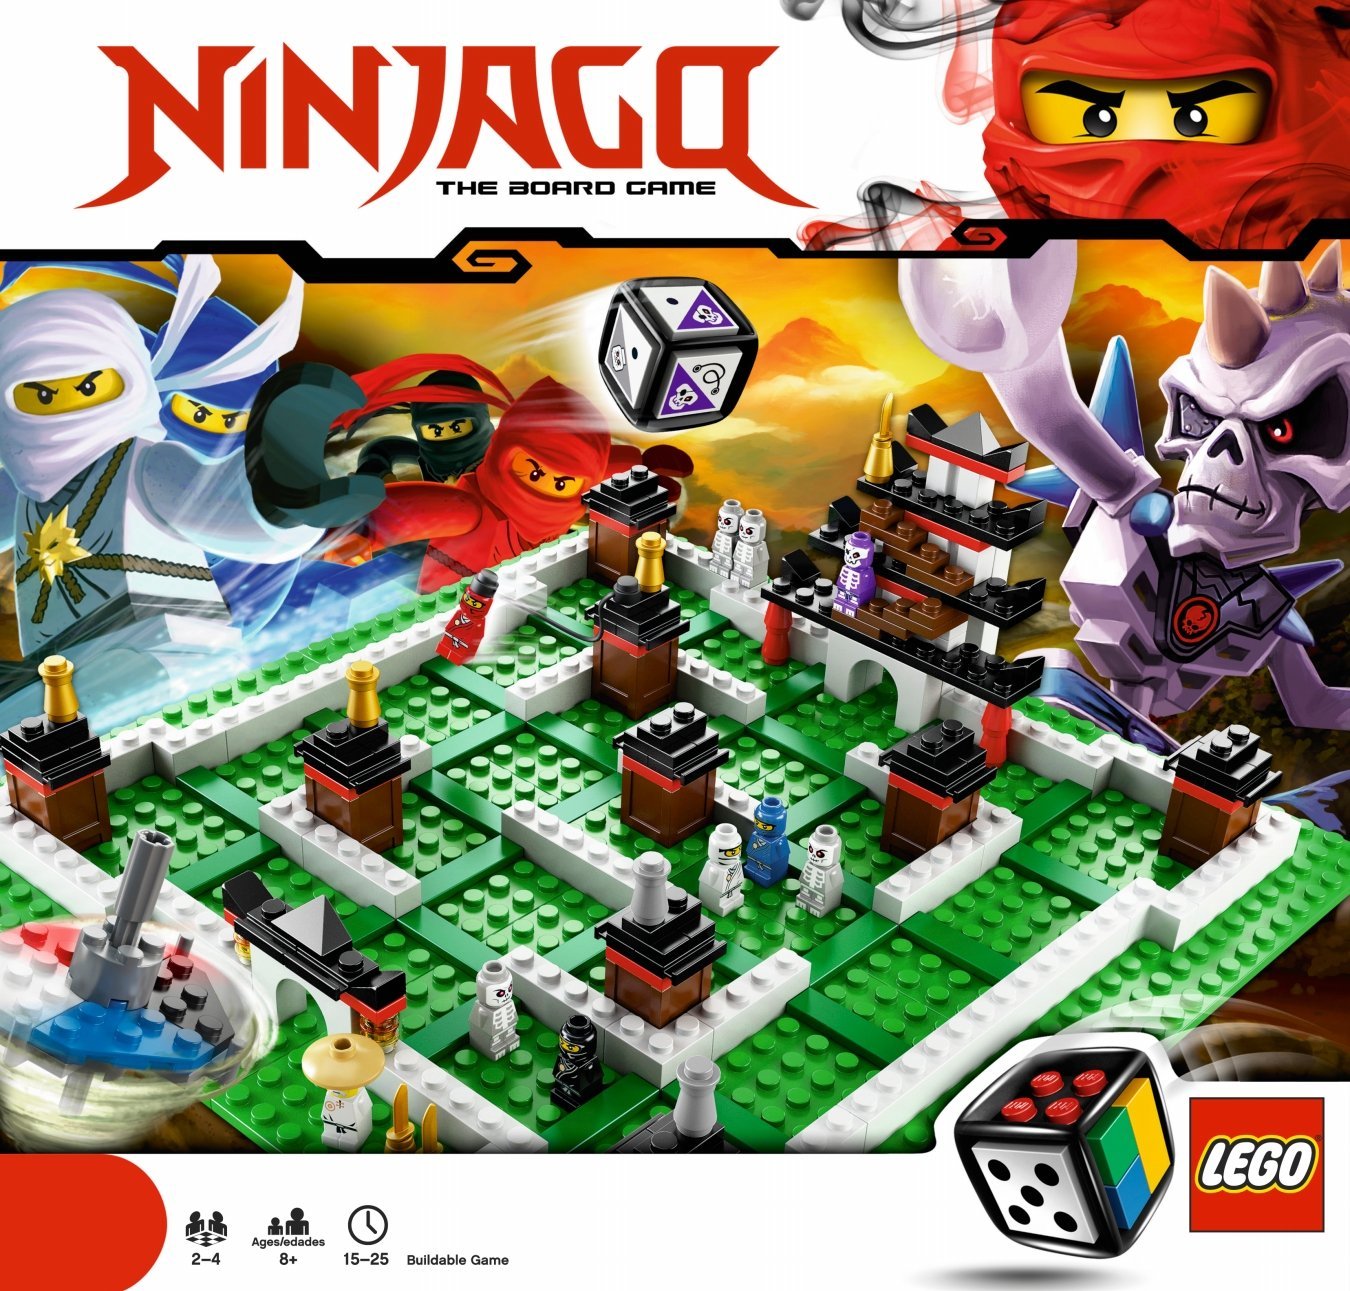 LEGO Games 3856 - Ninjago